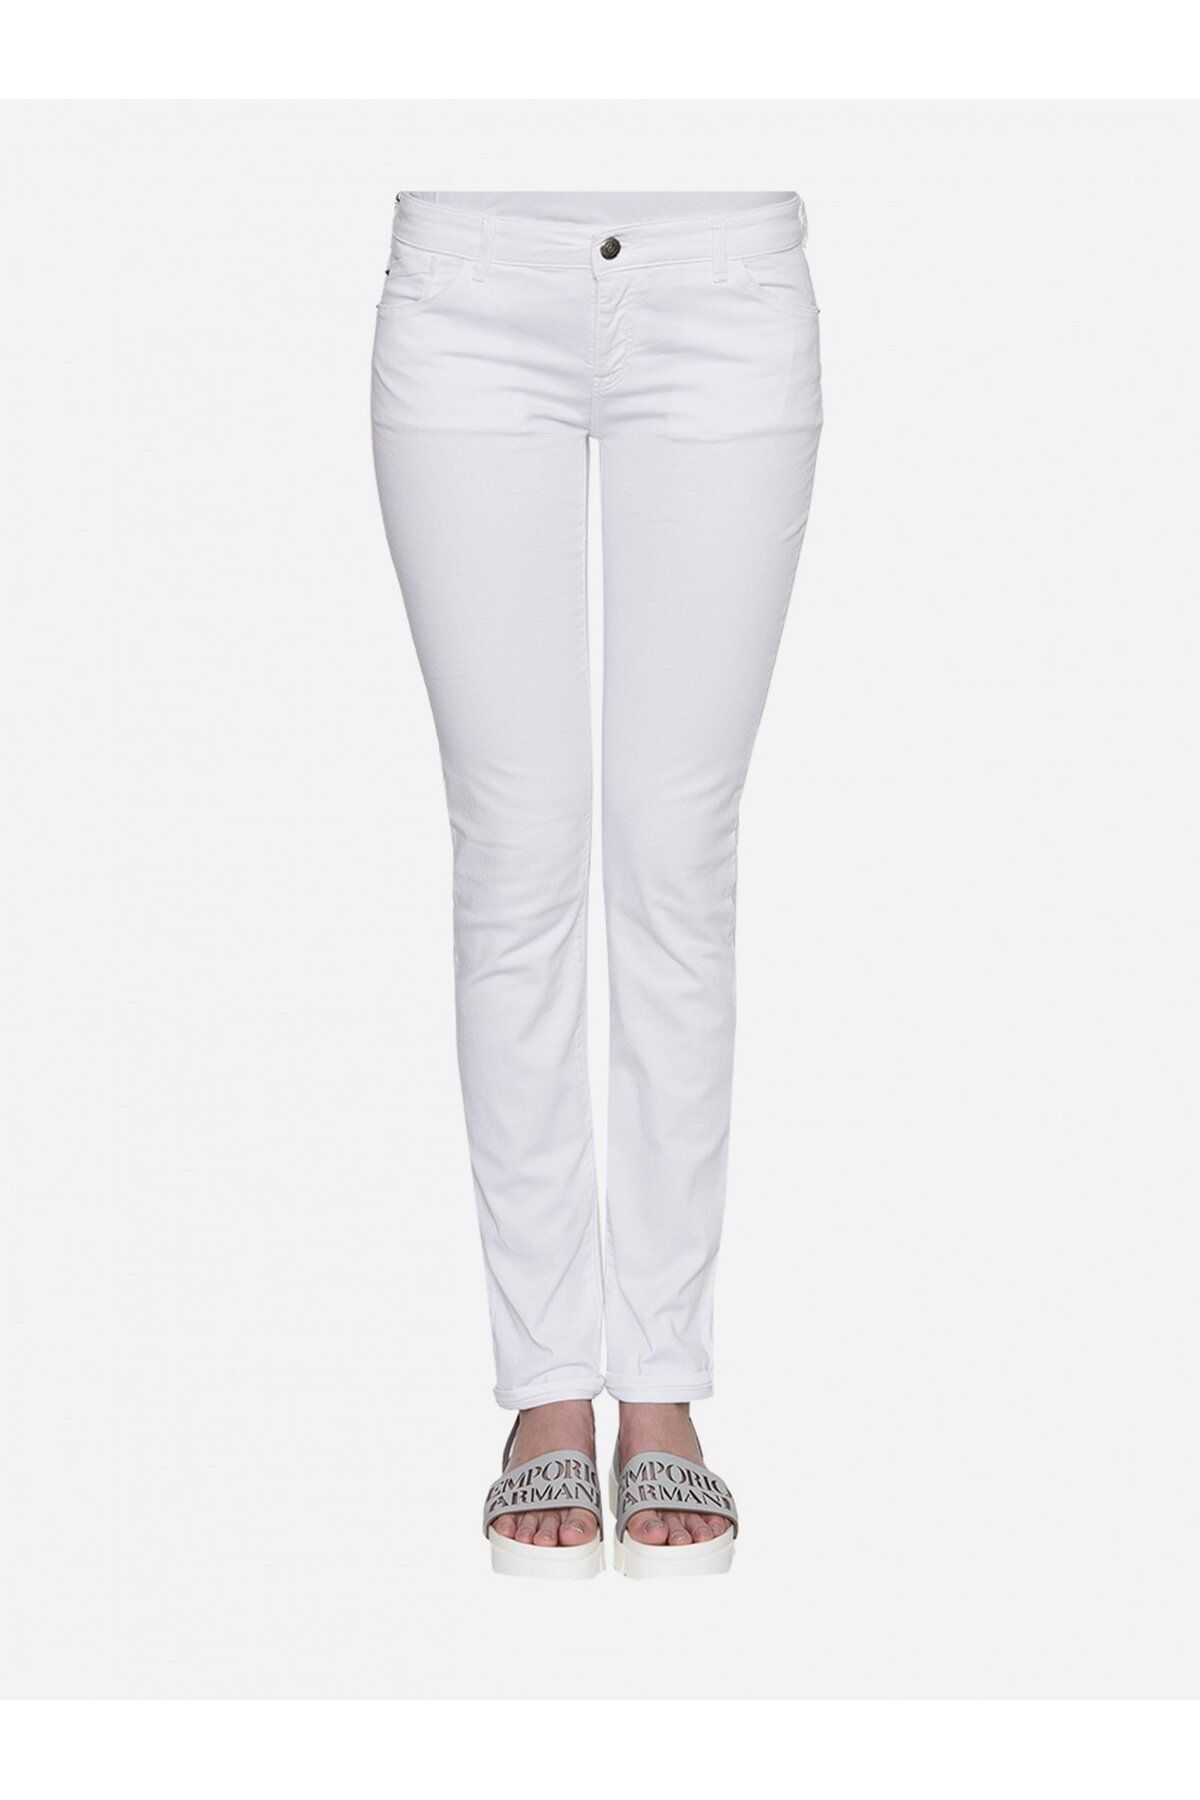 Emporio Armani Kadın Normal Belli 5 Cepli Dar Günlük Beyaz Jeans 3Z2J23 2N34Z-100